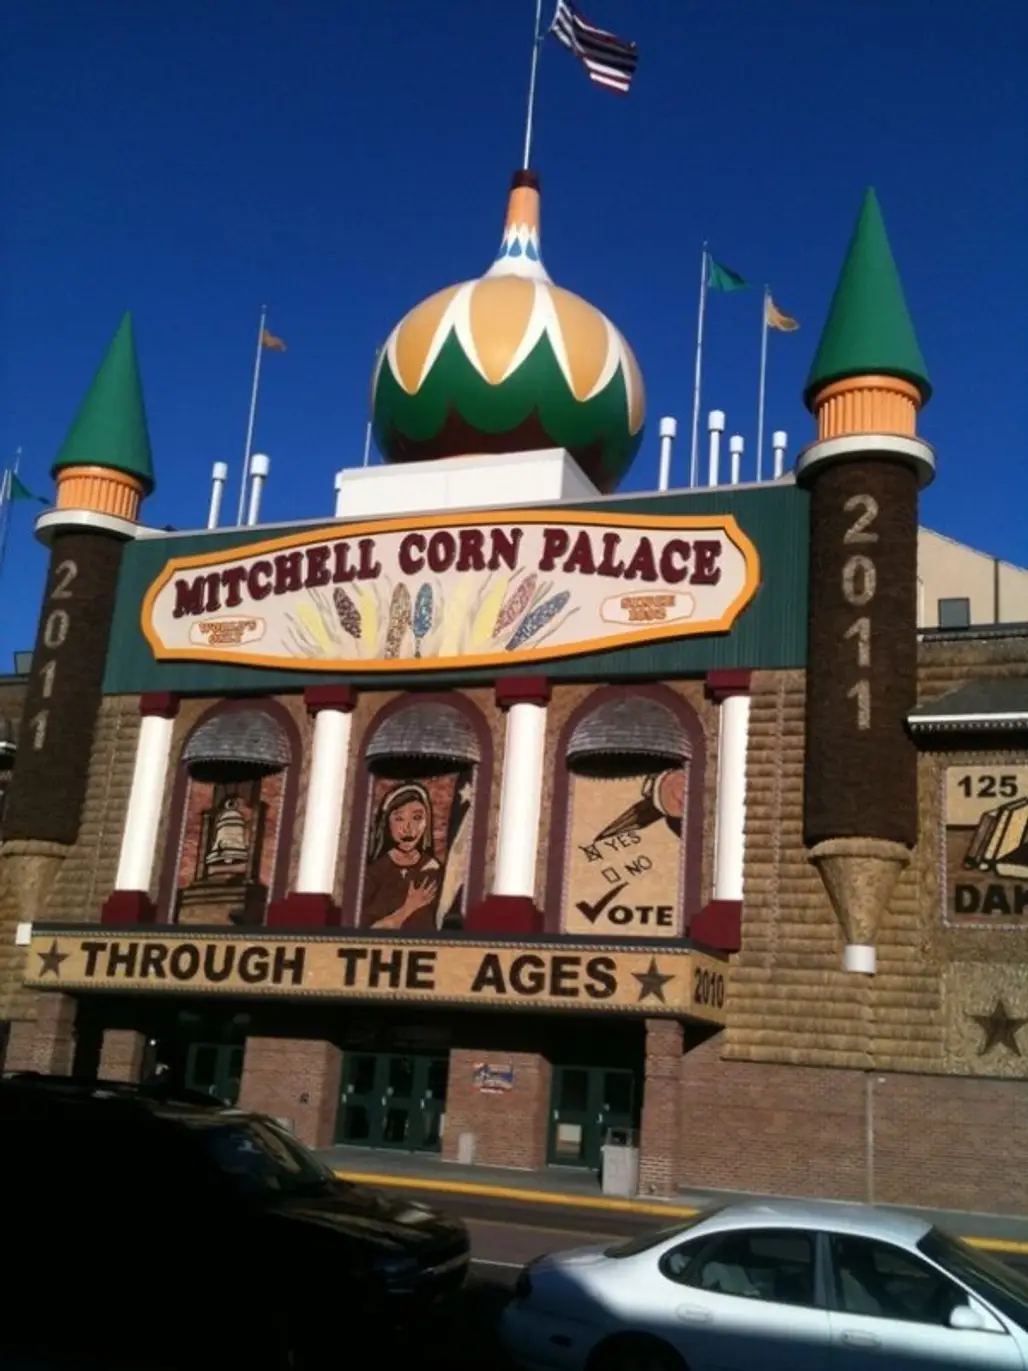 Corn Palace, Mitchell, South Dakota